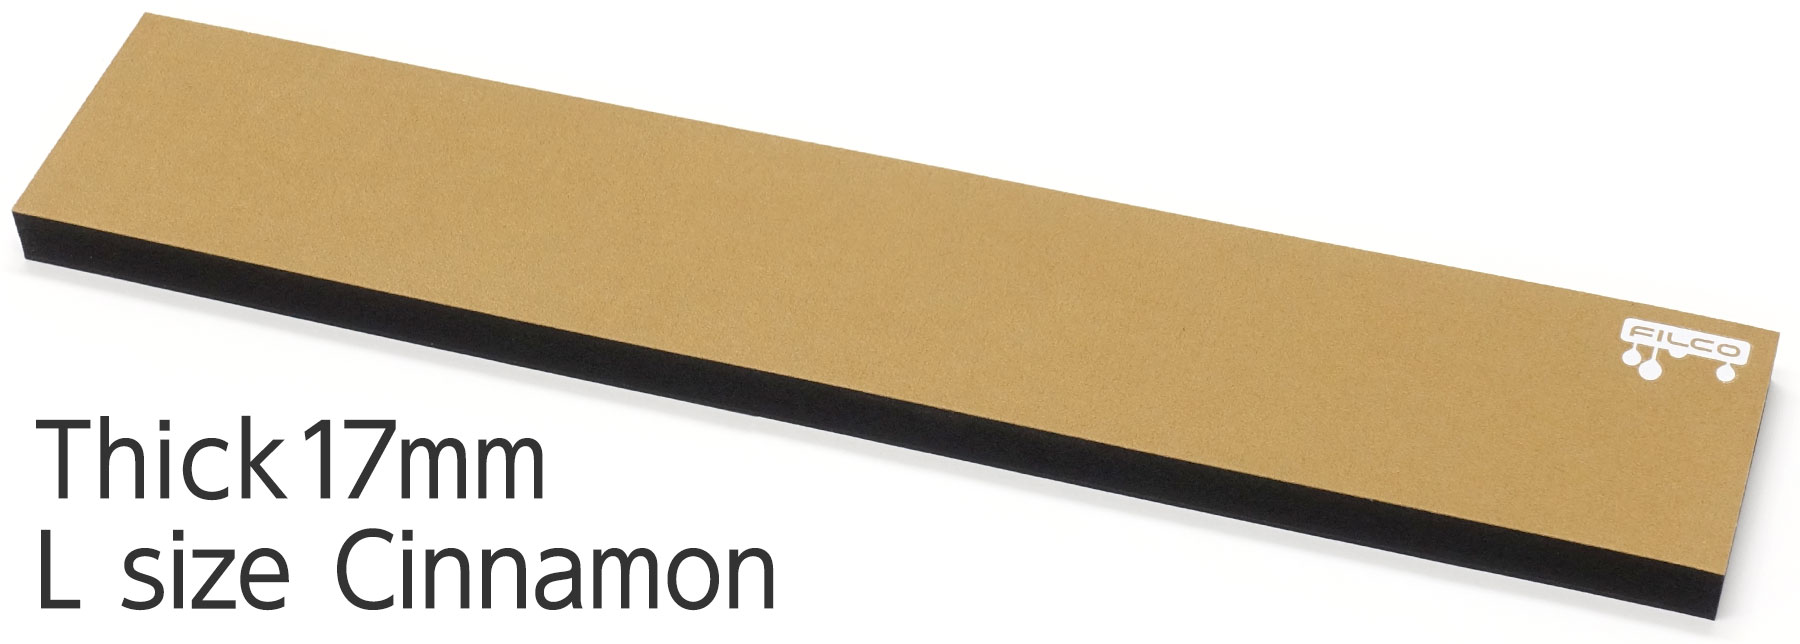 FILCO Majestouch Wrist Rest "Macaron" Thick 17mm / L size / Cinnamon